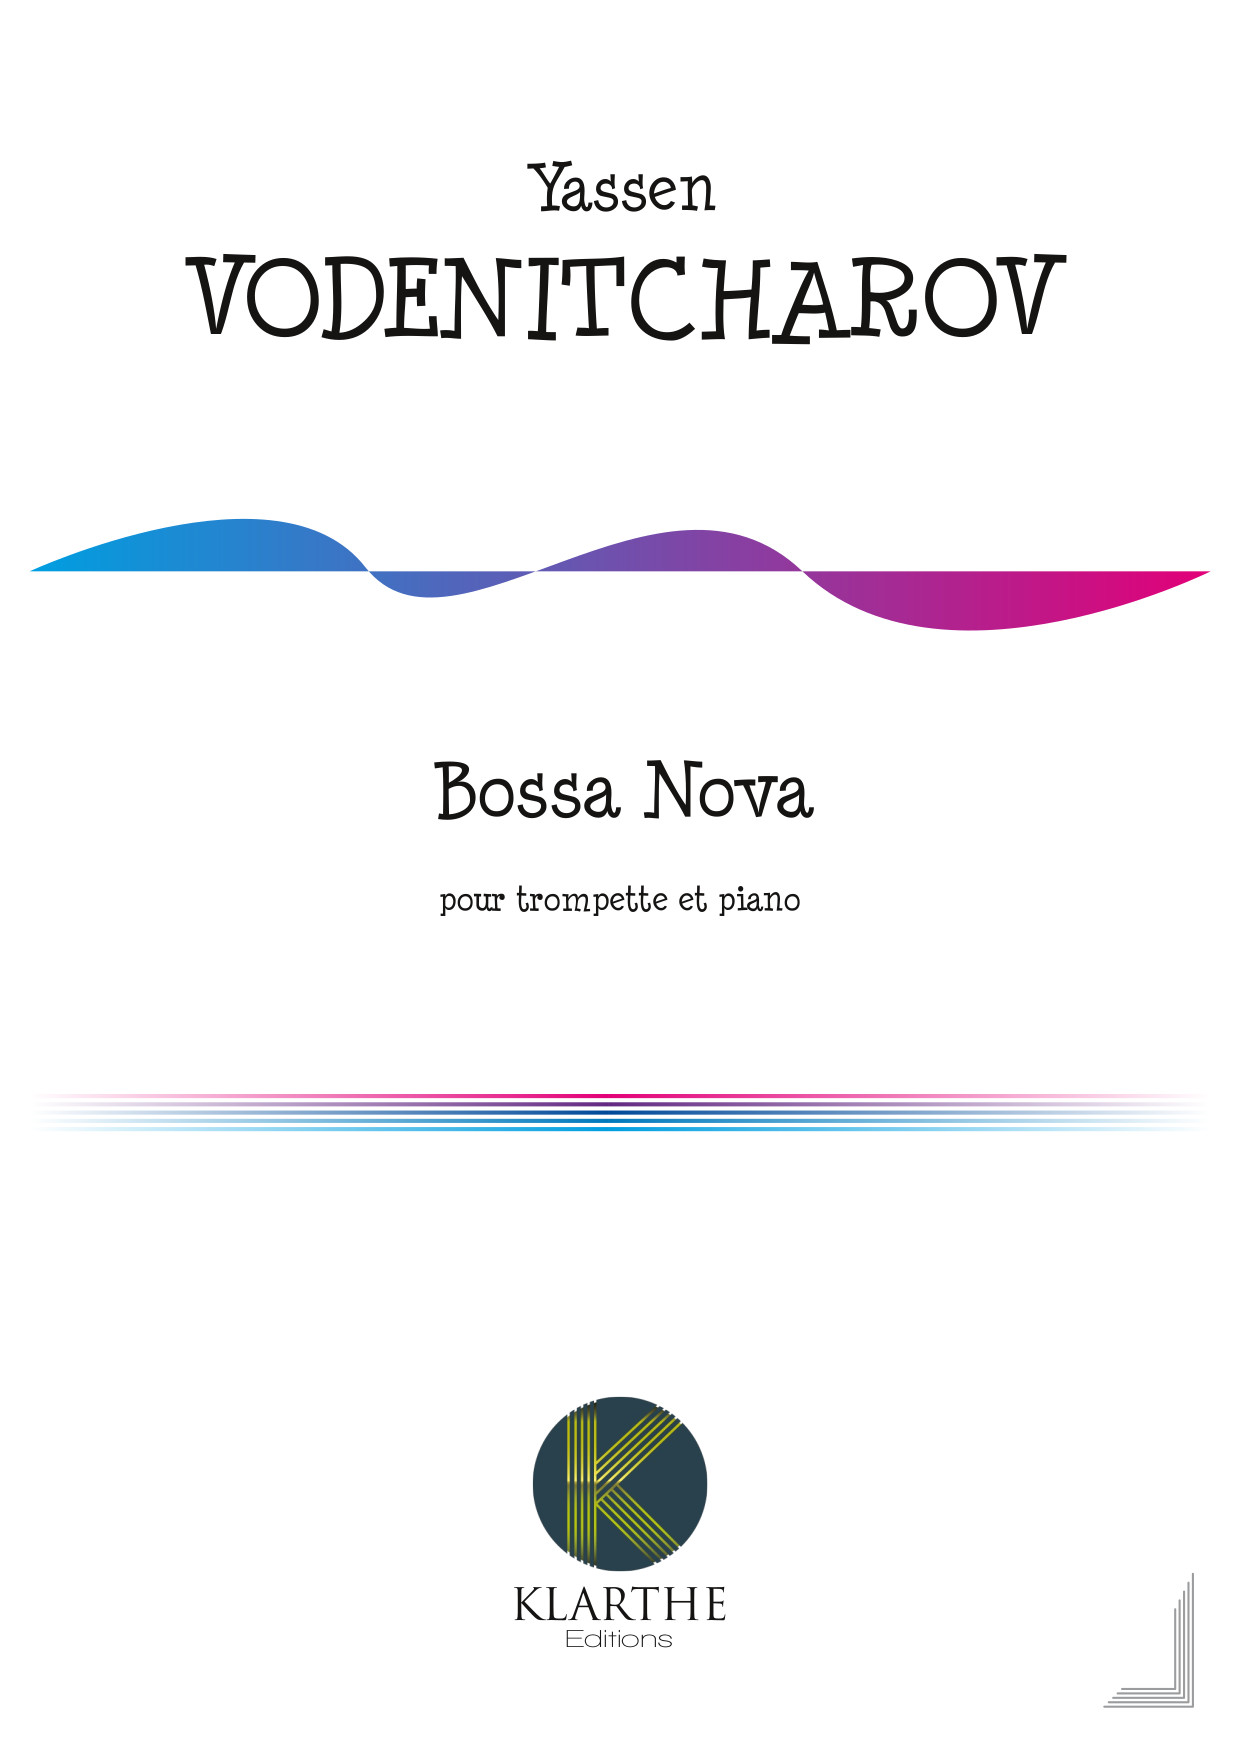 Bossa Nova (VODENITCHAROV YASSEN)